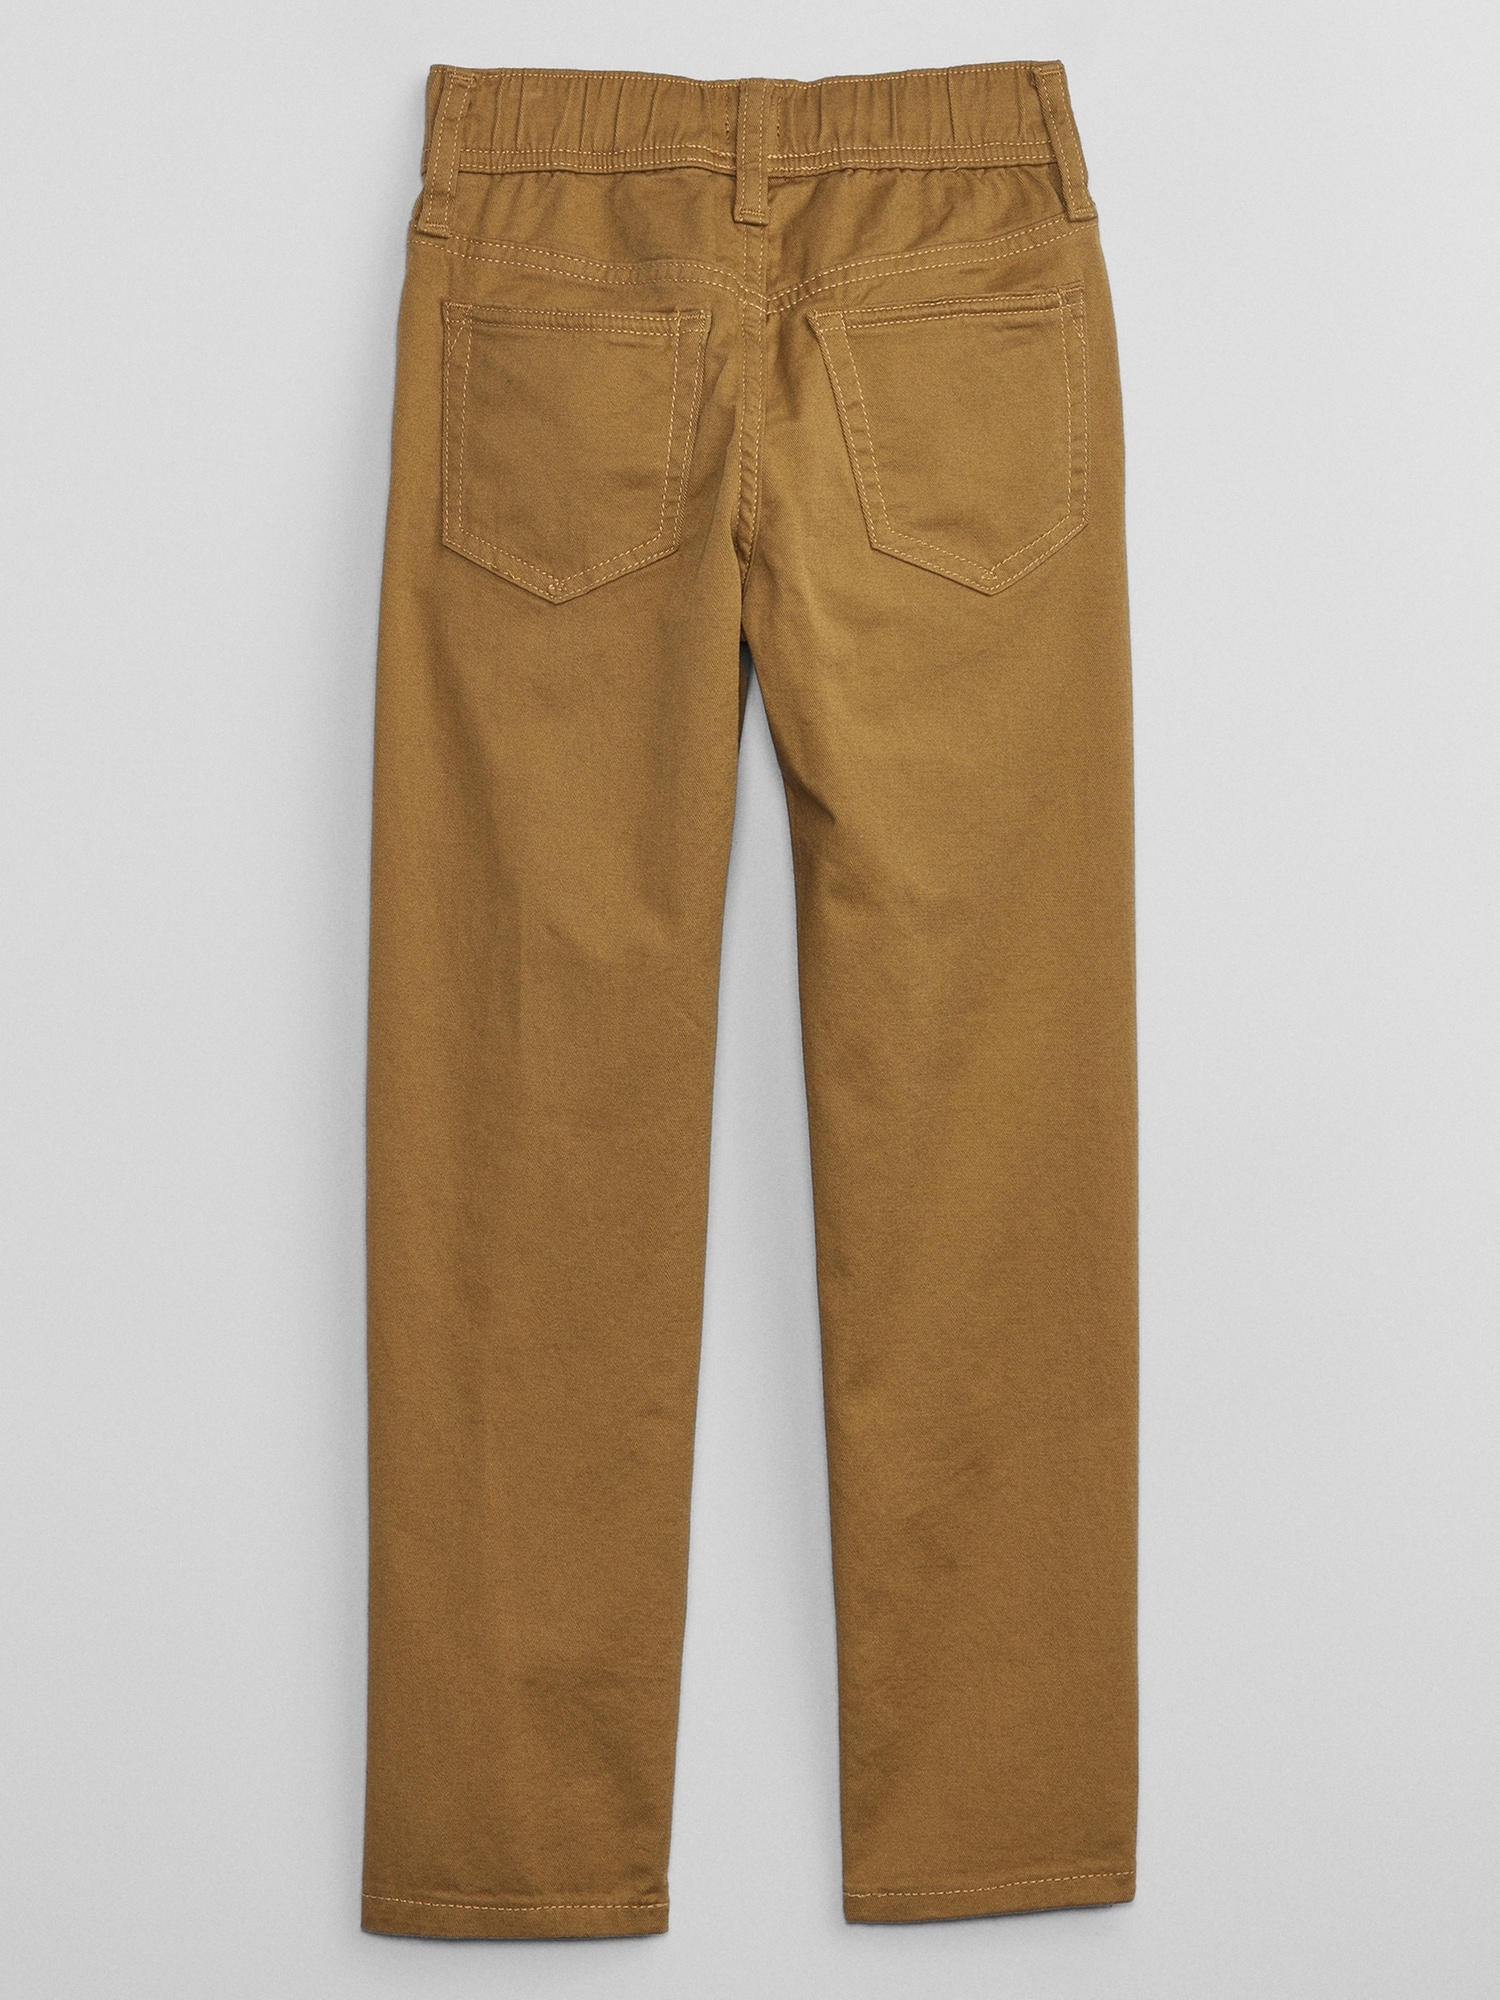 Gap Men's Cotton Khaki Slim Taper Fit Cargo Pants in Acorn Brown